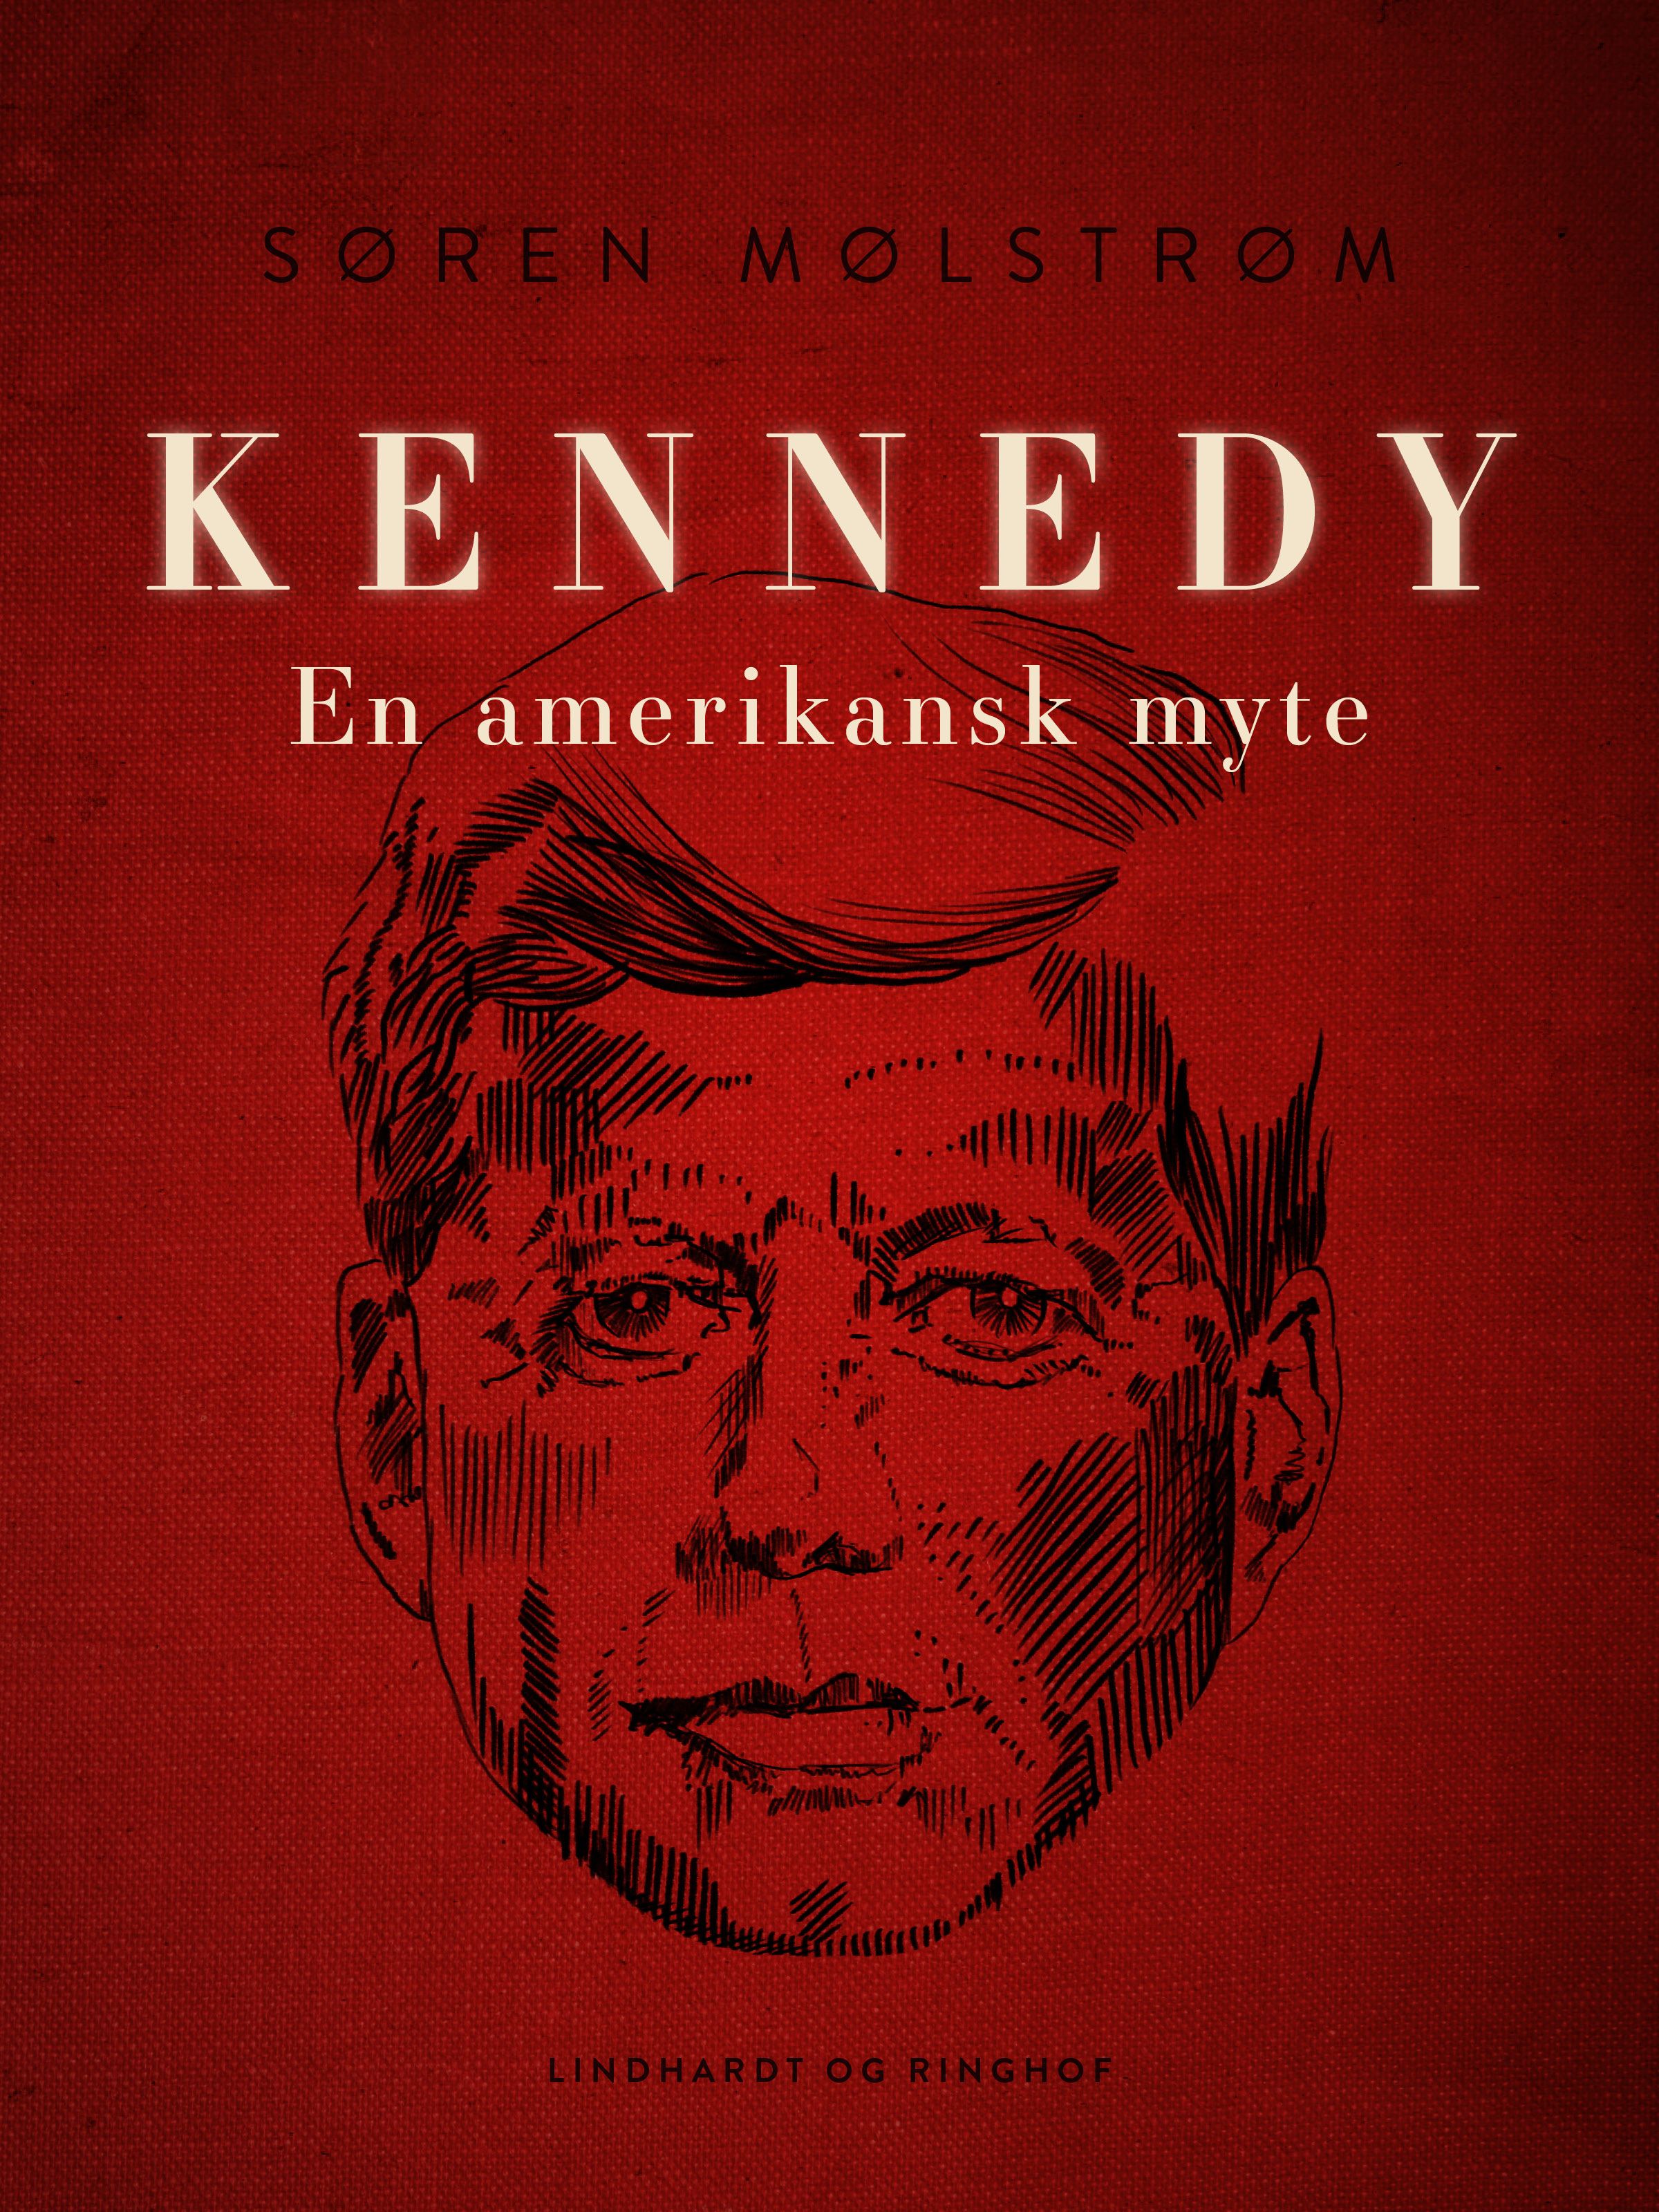 Kennedy - en amerikansk myte, e-bog af Søren Mølstrøm